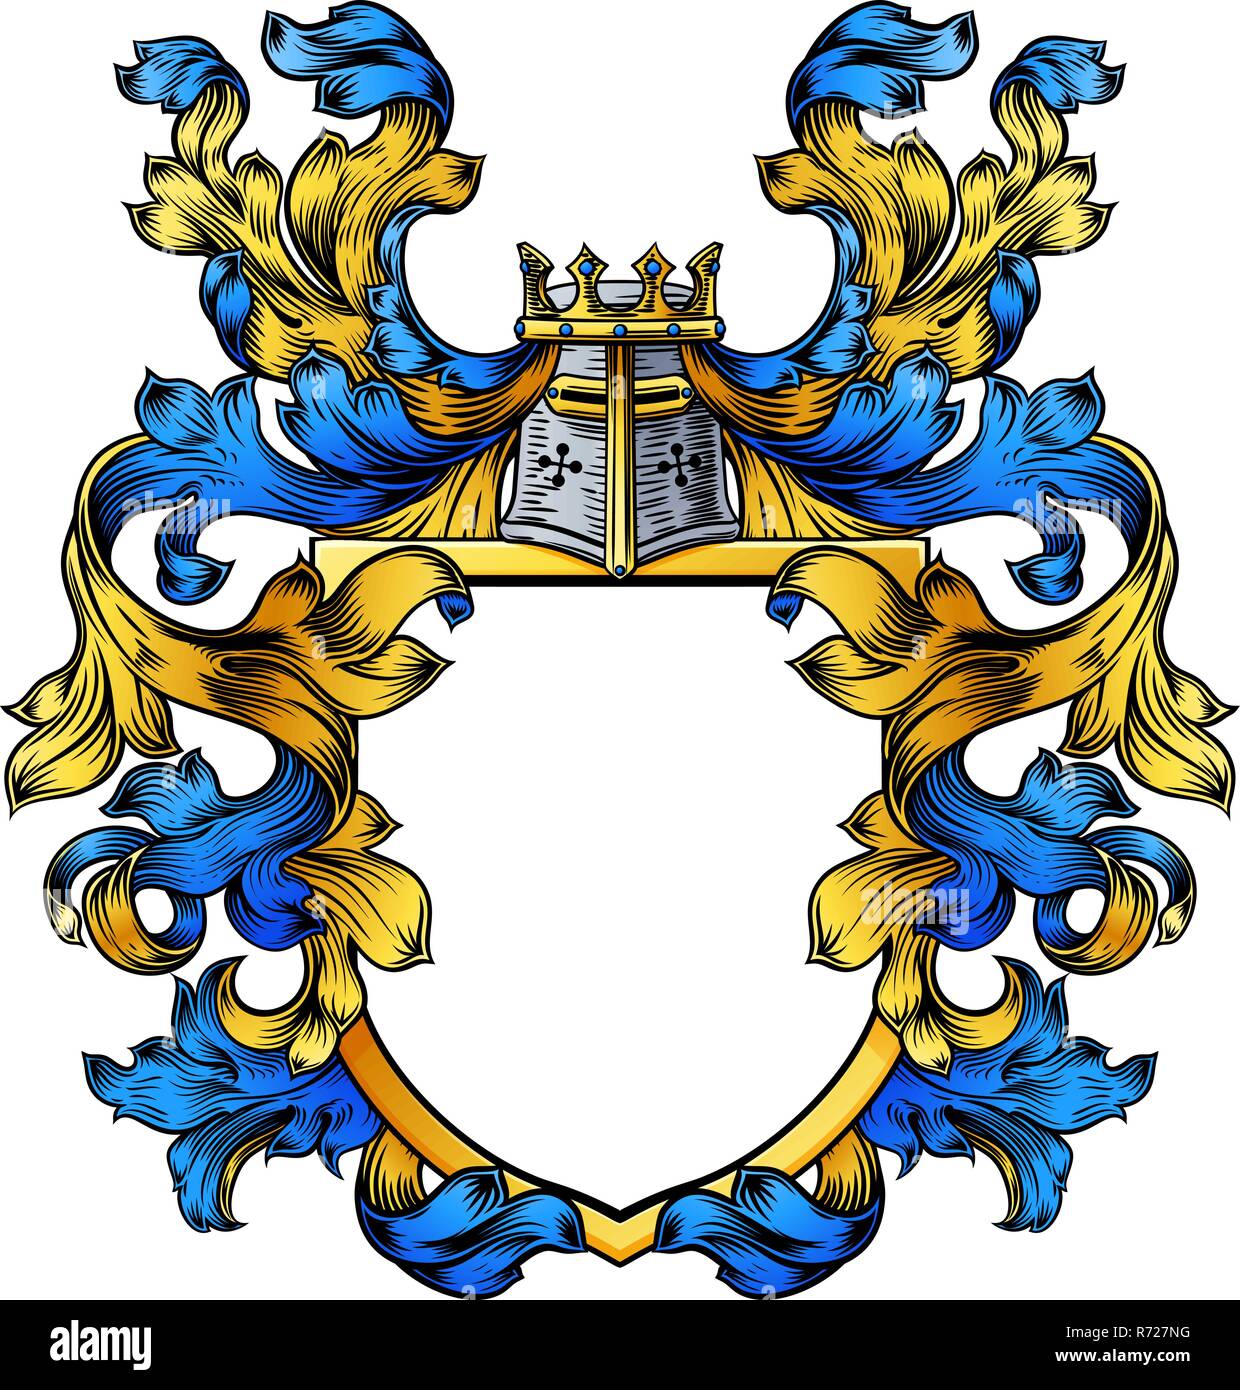 Stemma Knight stemma araldico scudo di famiglia Illustrazione Vettoriale